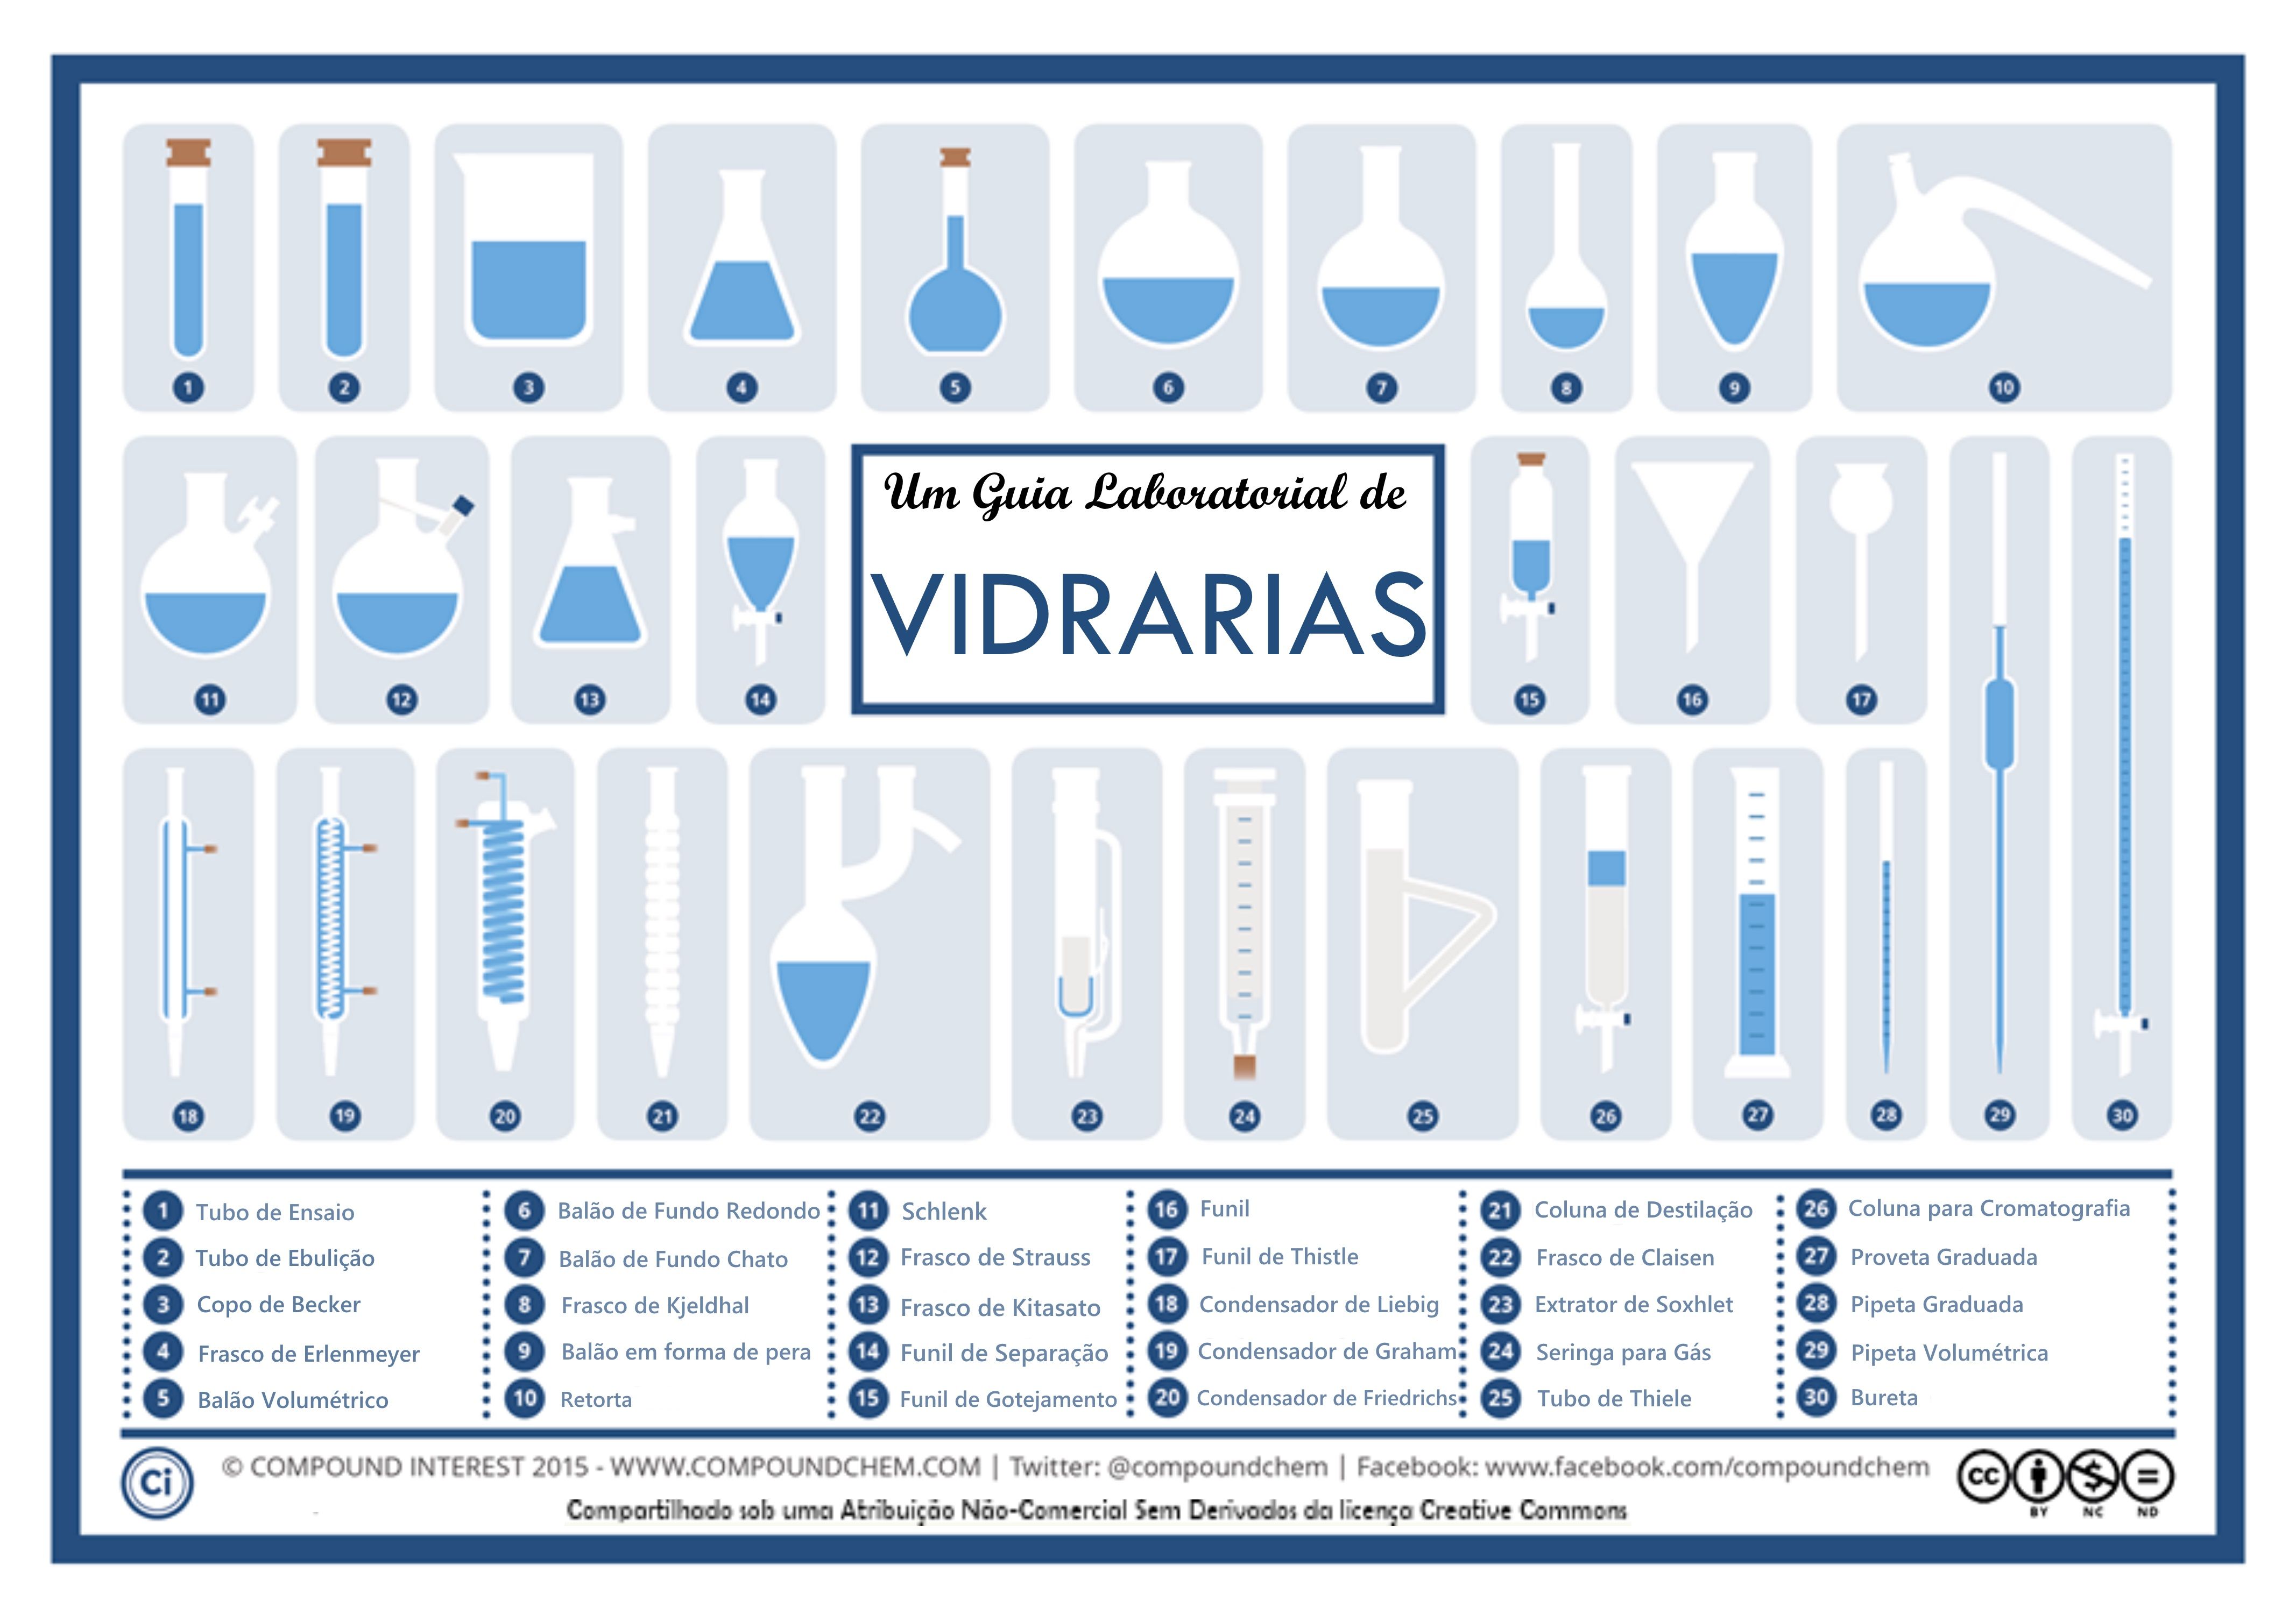 vidrarias.jpg (4267×3013) | D Chem | Pinterest